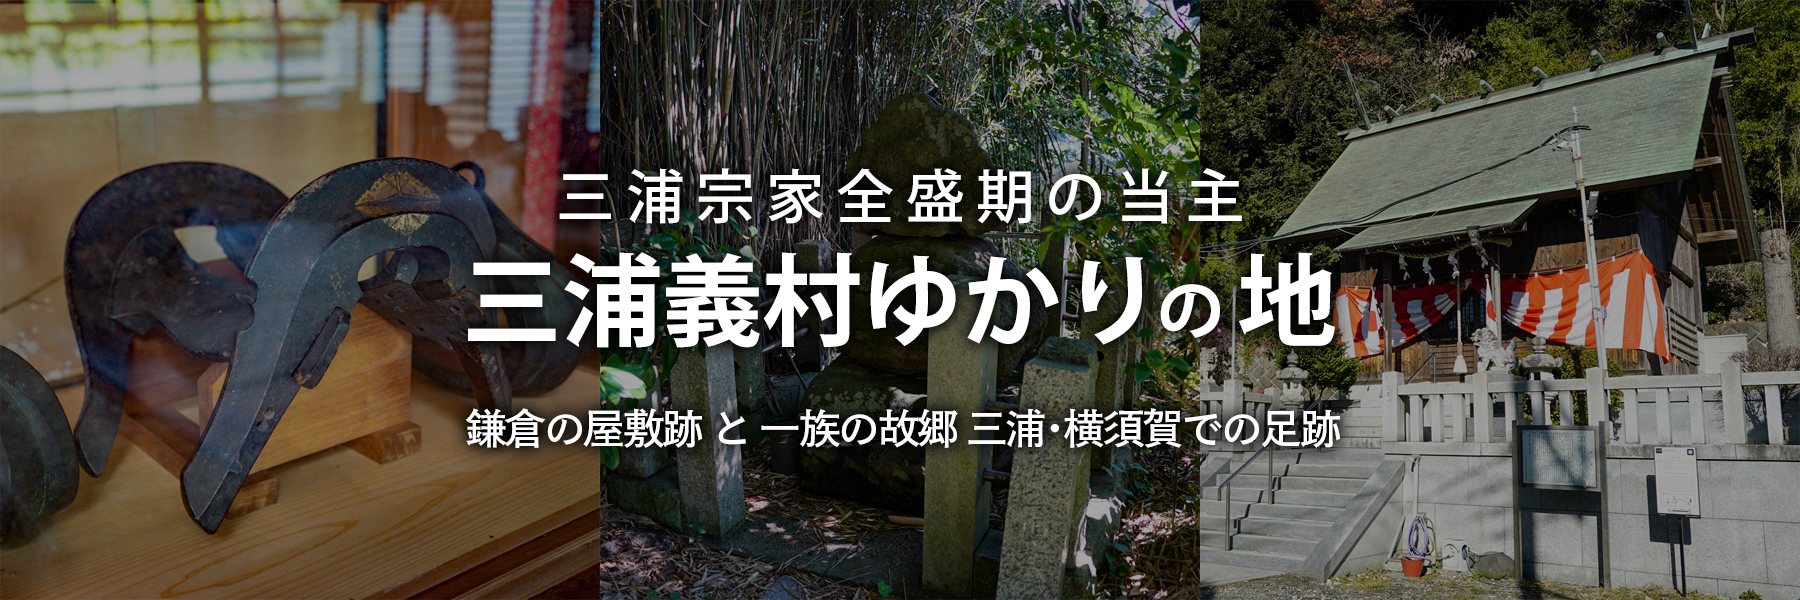 三浦義村ゆかりの地 | 鎌倉の屋敷跡と一族の故郷三浦・横須賀での足跡